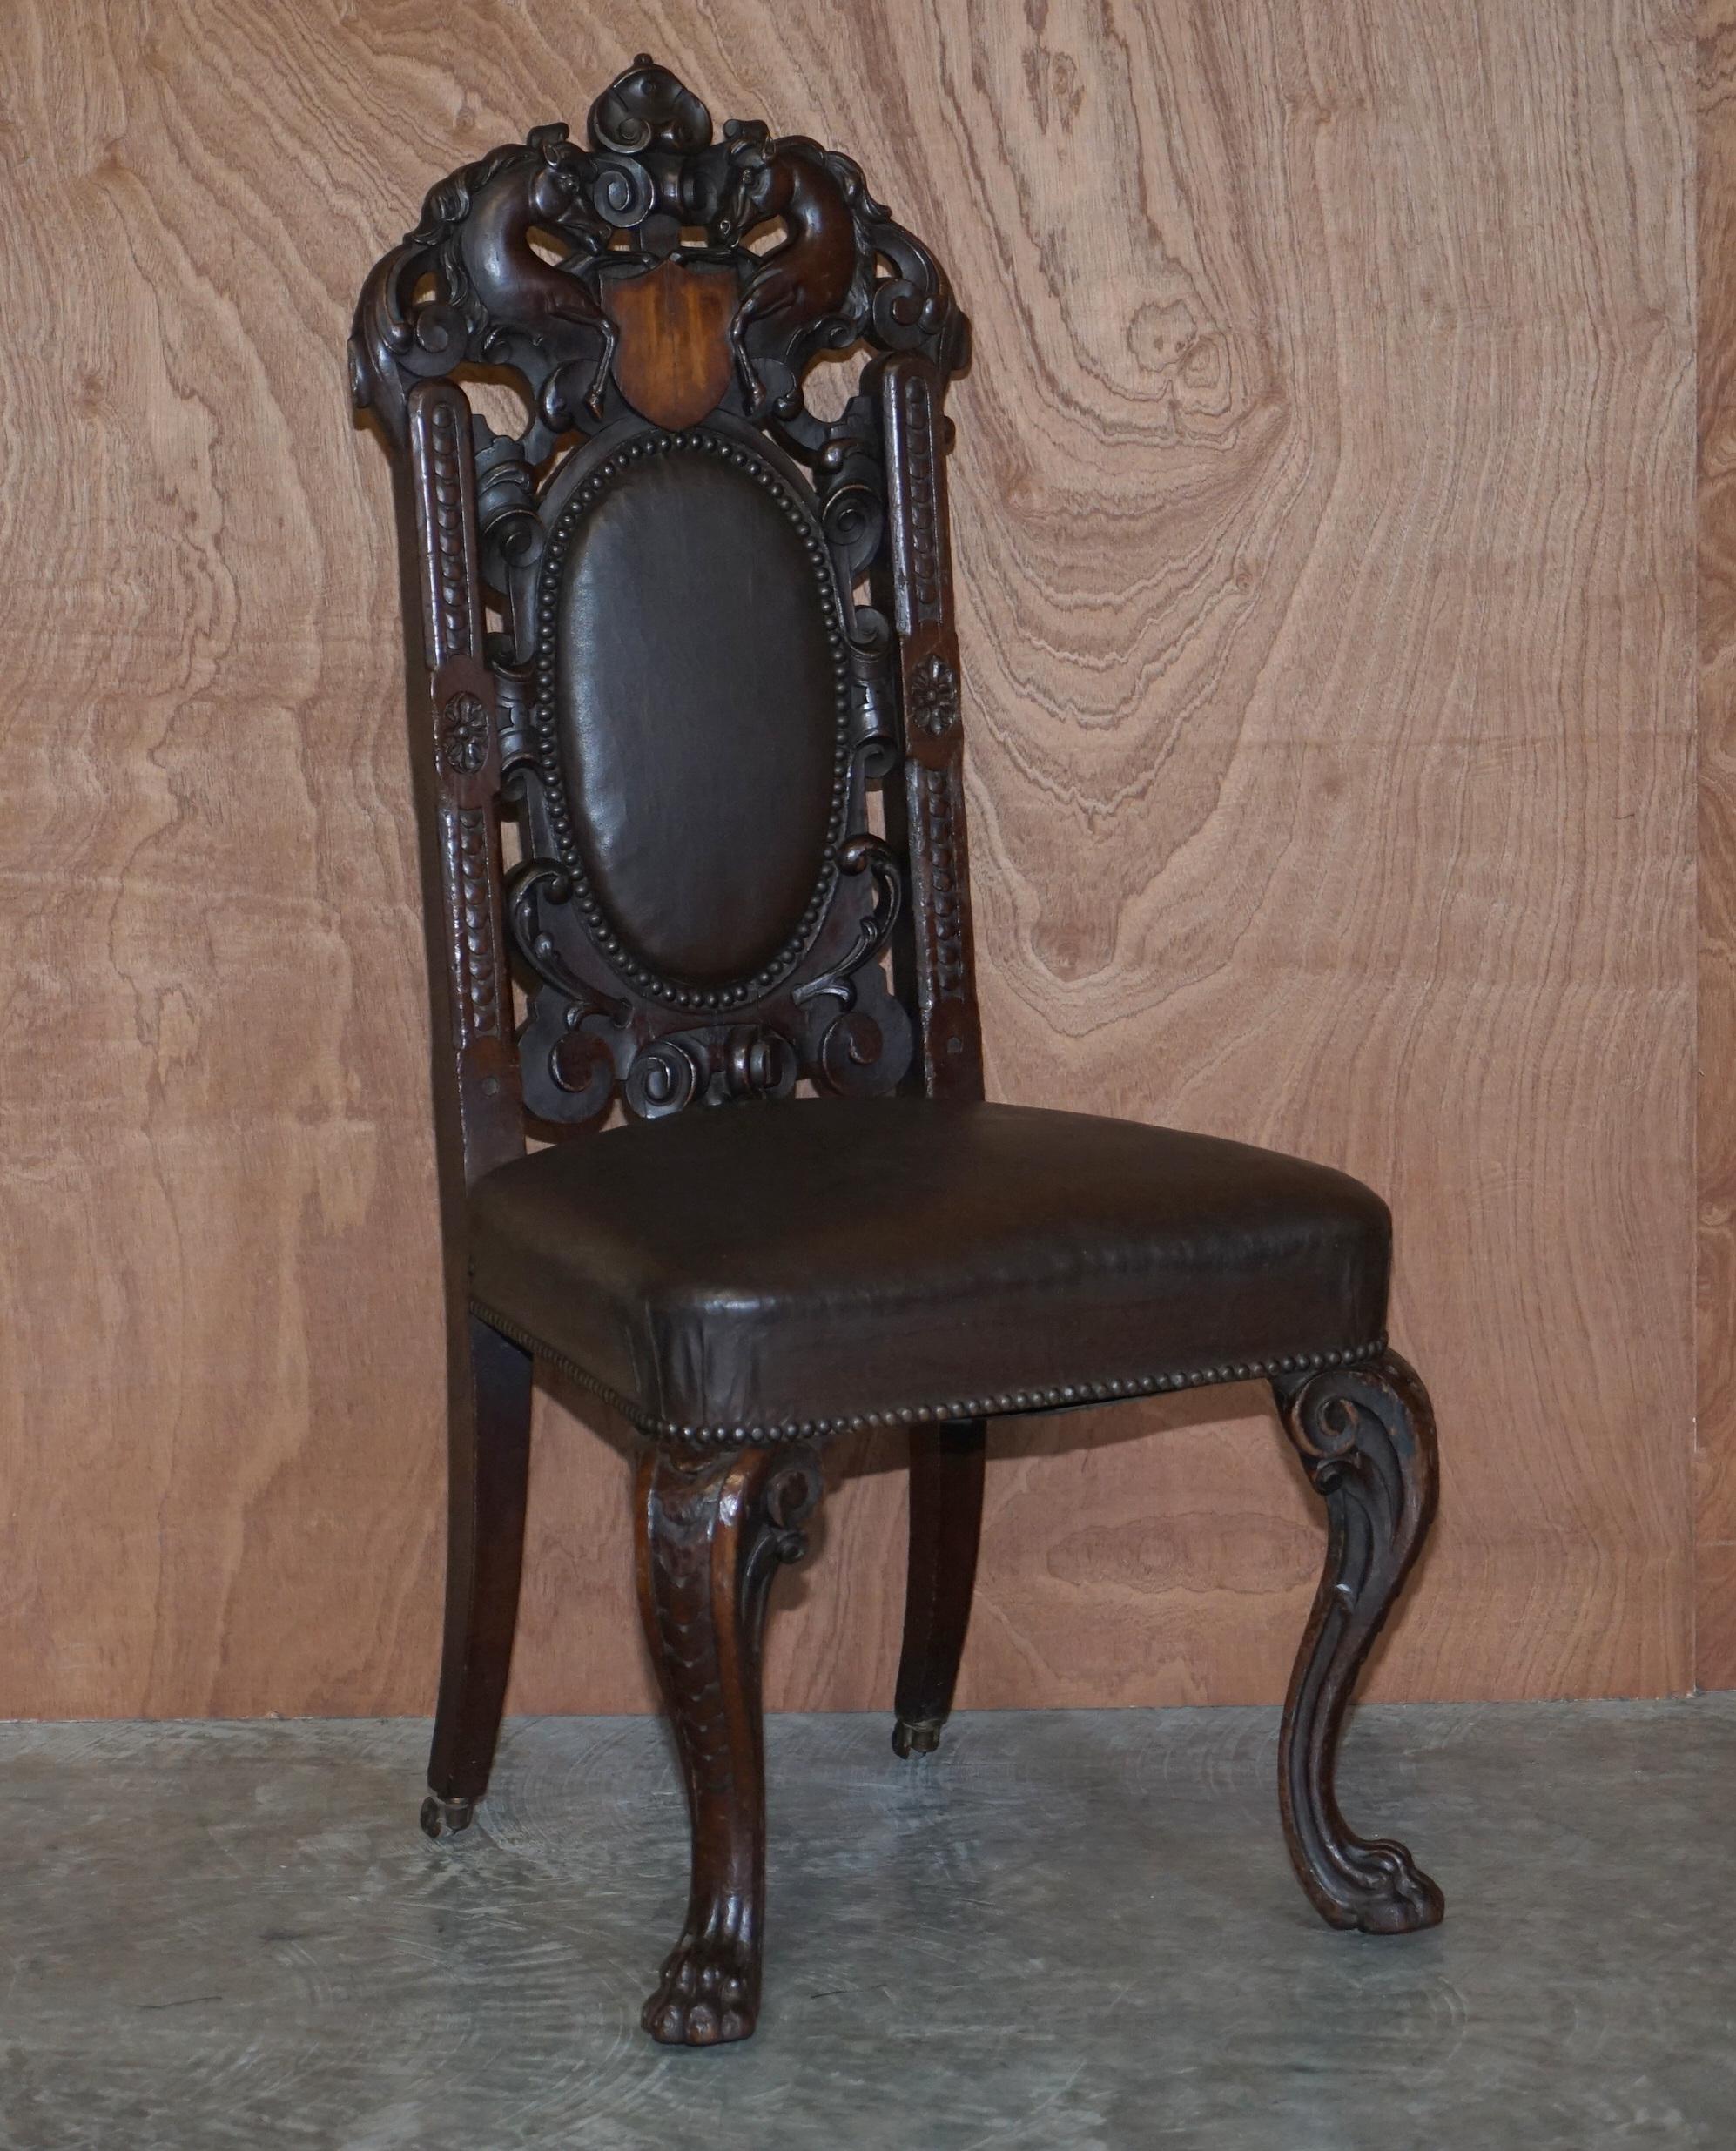 Nous sommes ravis d'offrir à la vente ce bel ensemble de huit chaises de salle à manger originales, datant du début de l'époque victorienne, vers 1840, sculptées à la main, de style néo-jacobin, avec un cimier principal en forme de cheval sculpté à